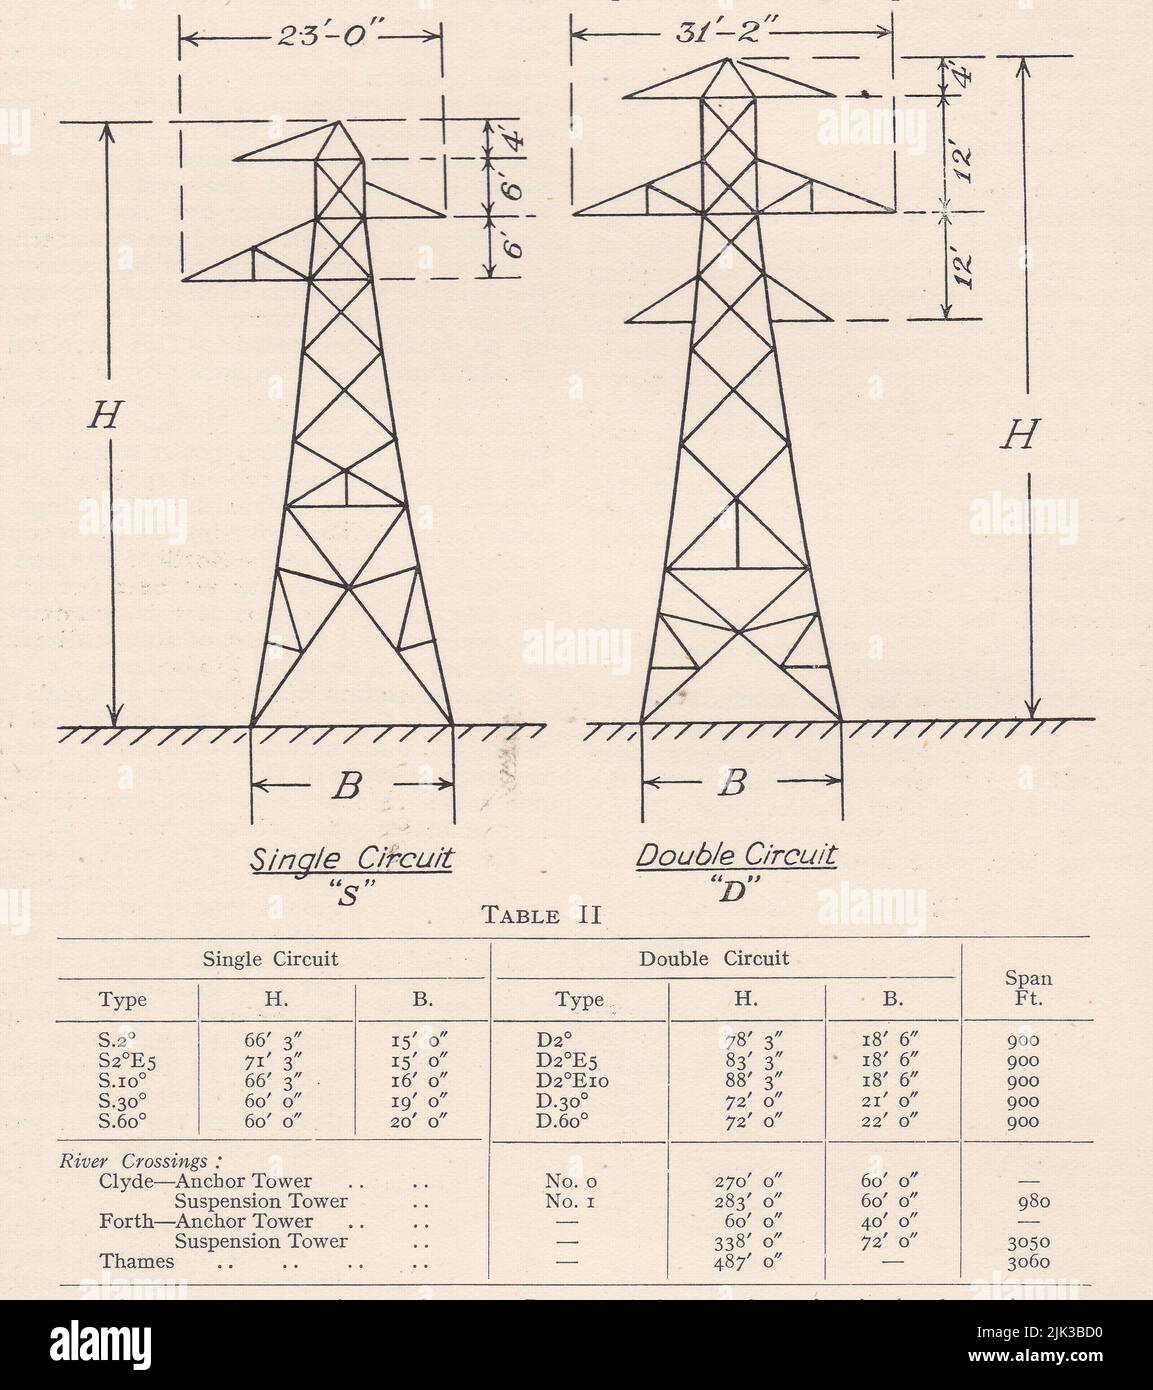 Diagramas vintage y tabla de aisladores de red eléctrica. Foto de stock